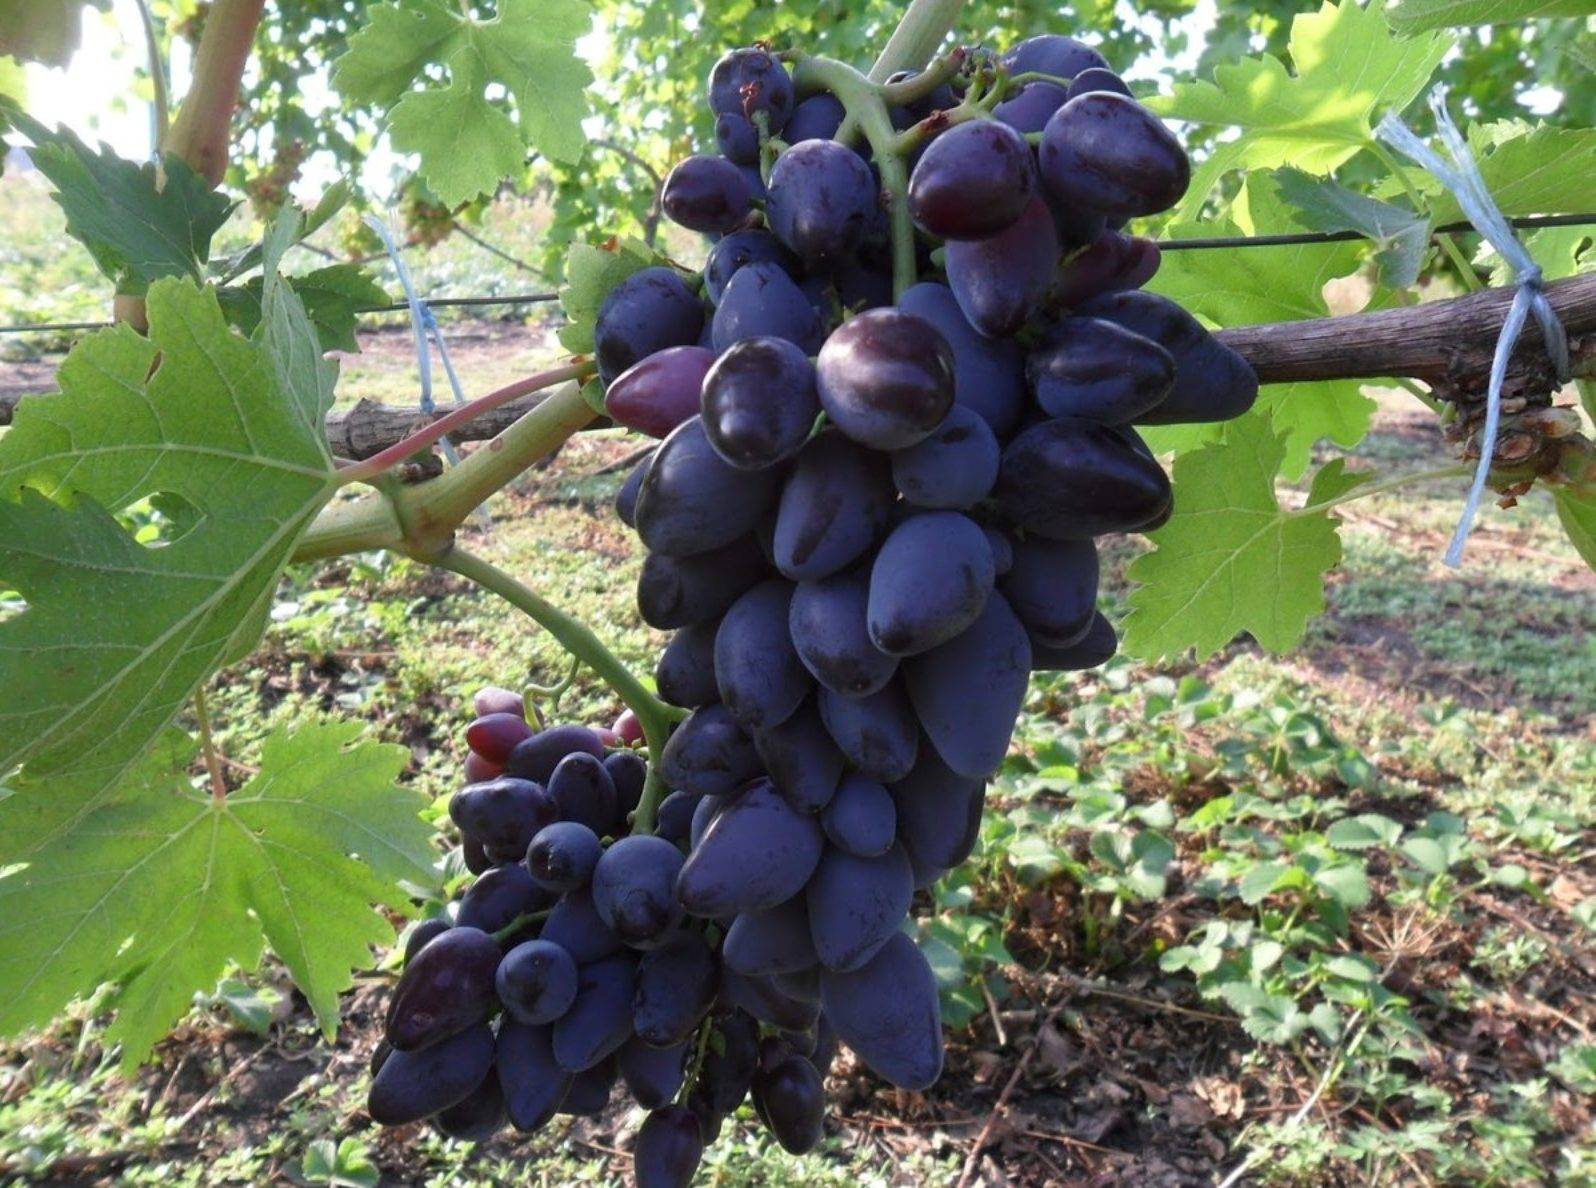 Сорт викинг (виноград): описание, выращивание, отзывы - общая информация - 2020